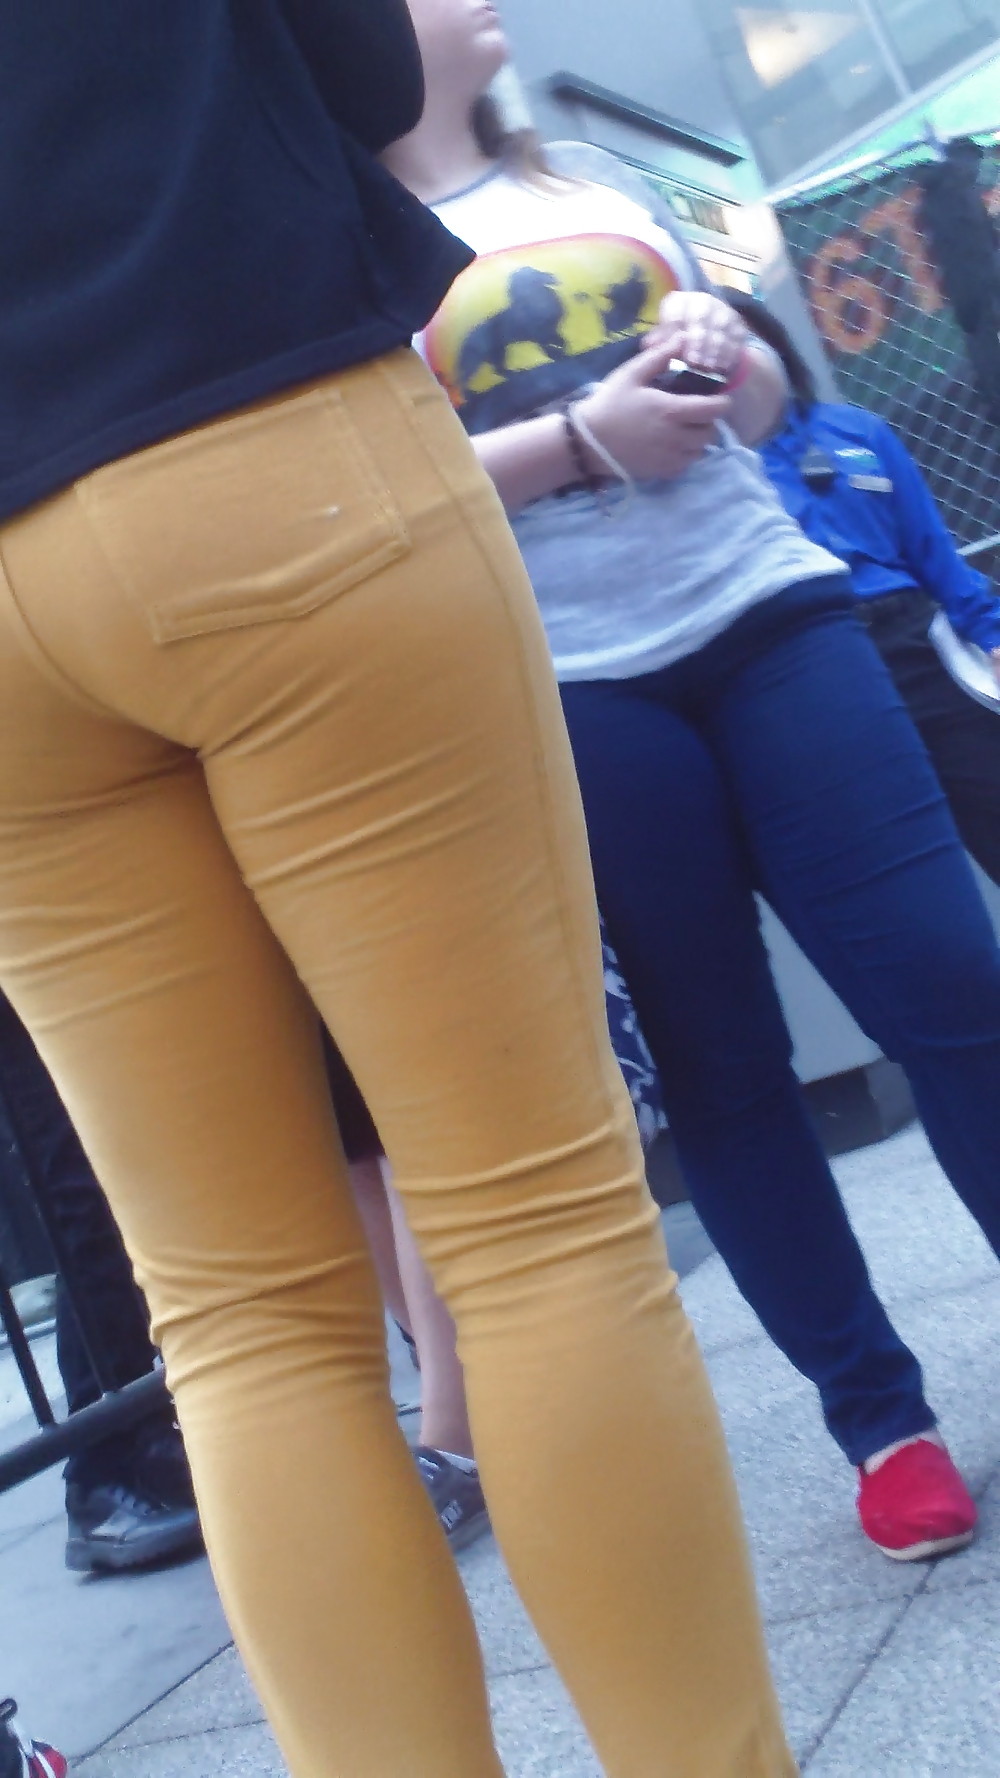 Popular teen girls butts & ass in jeans #21497800